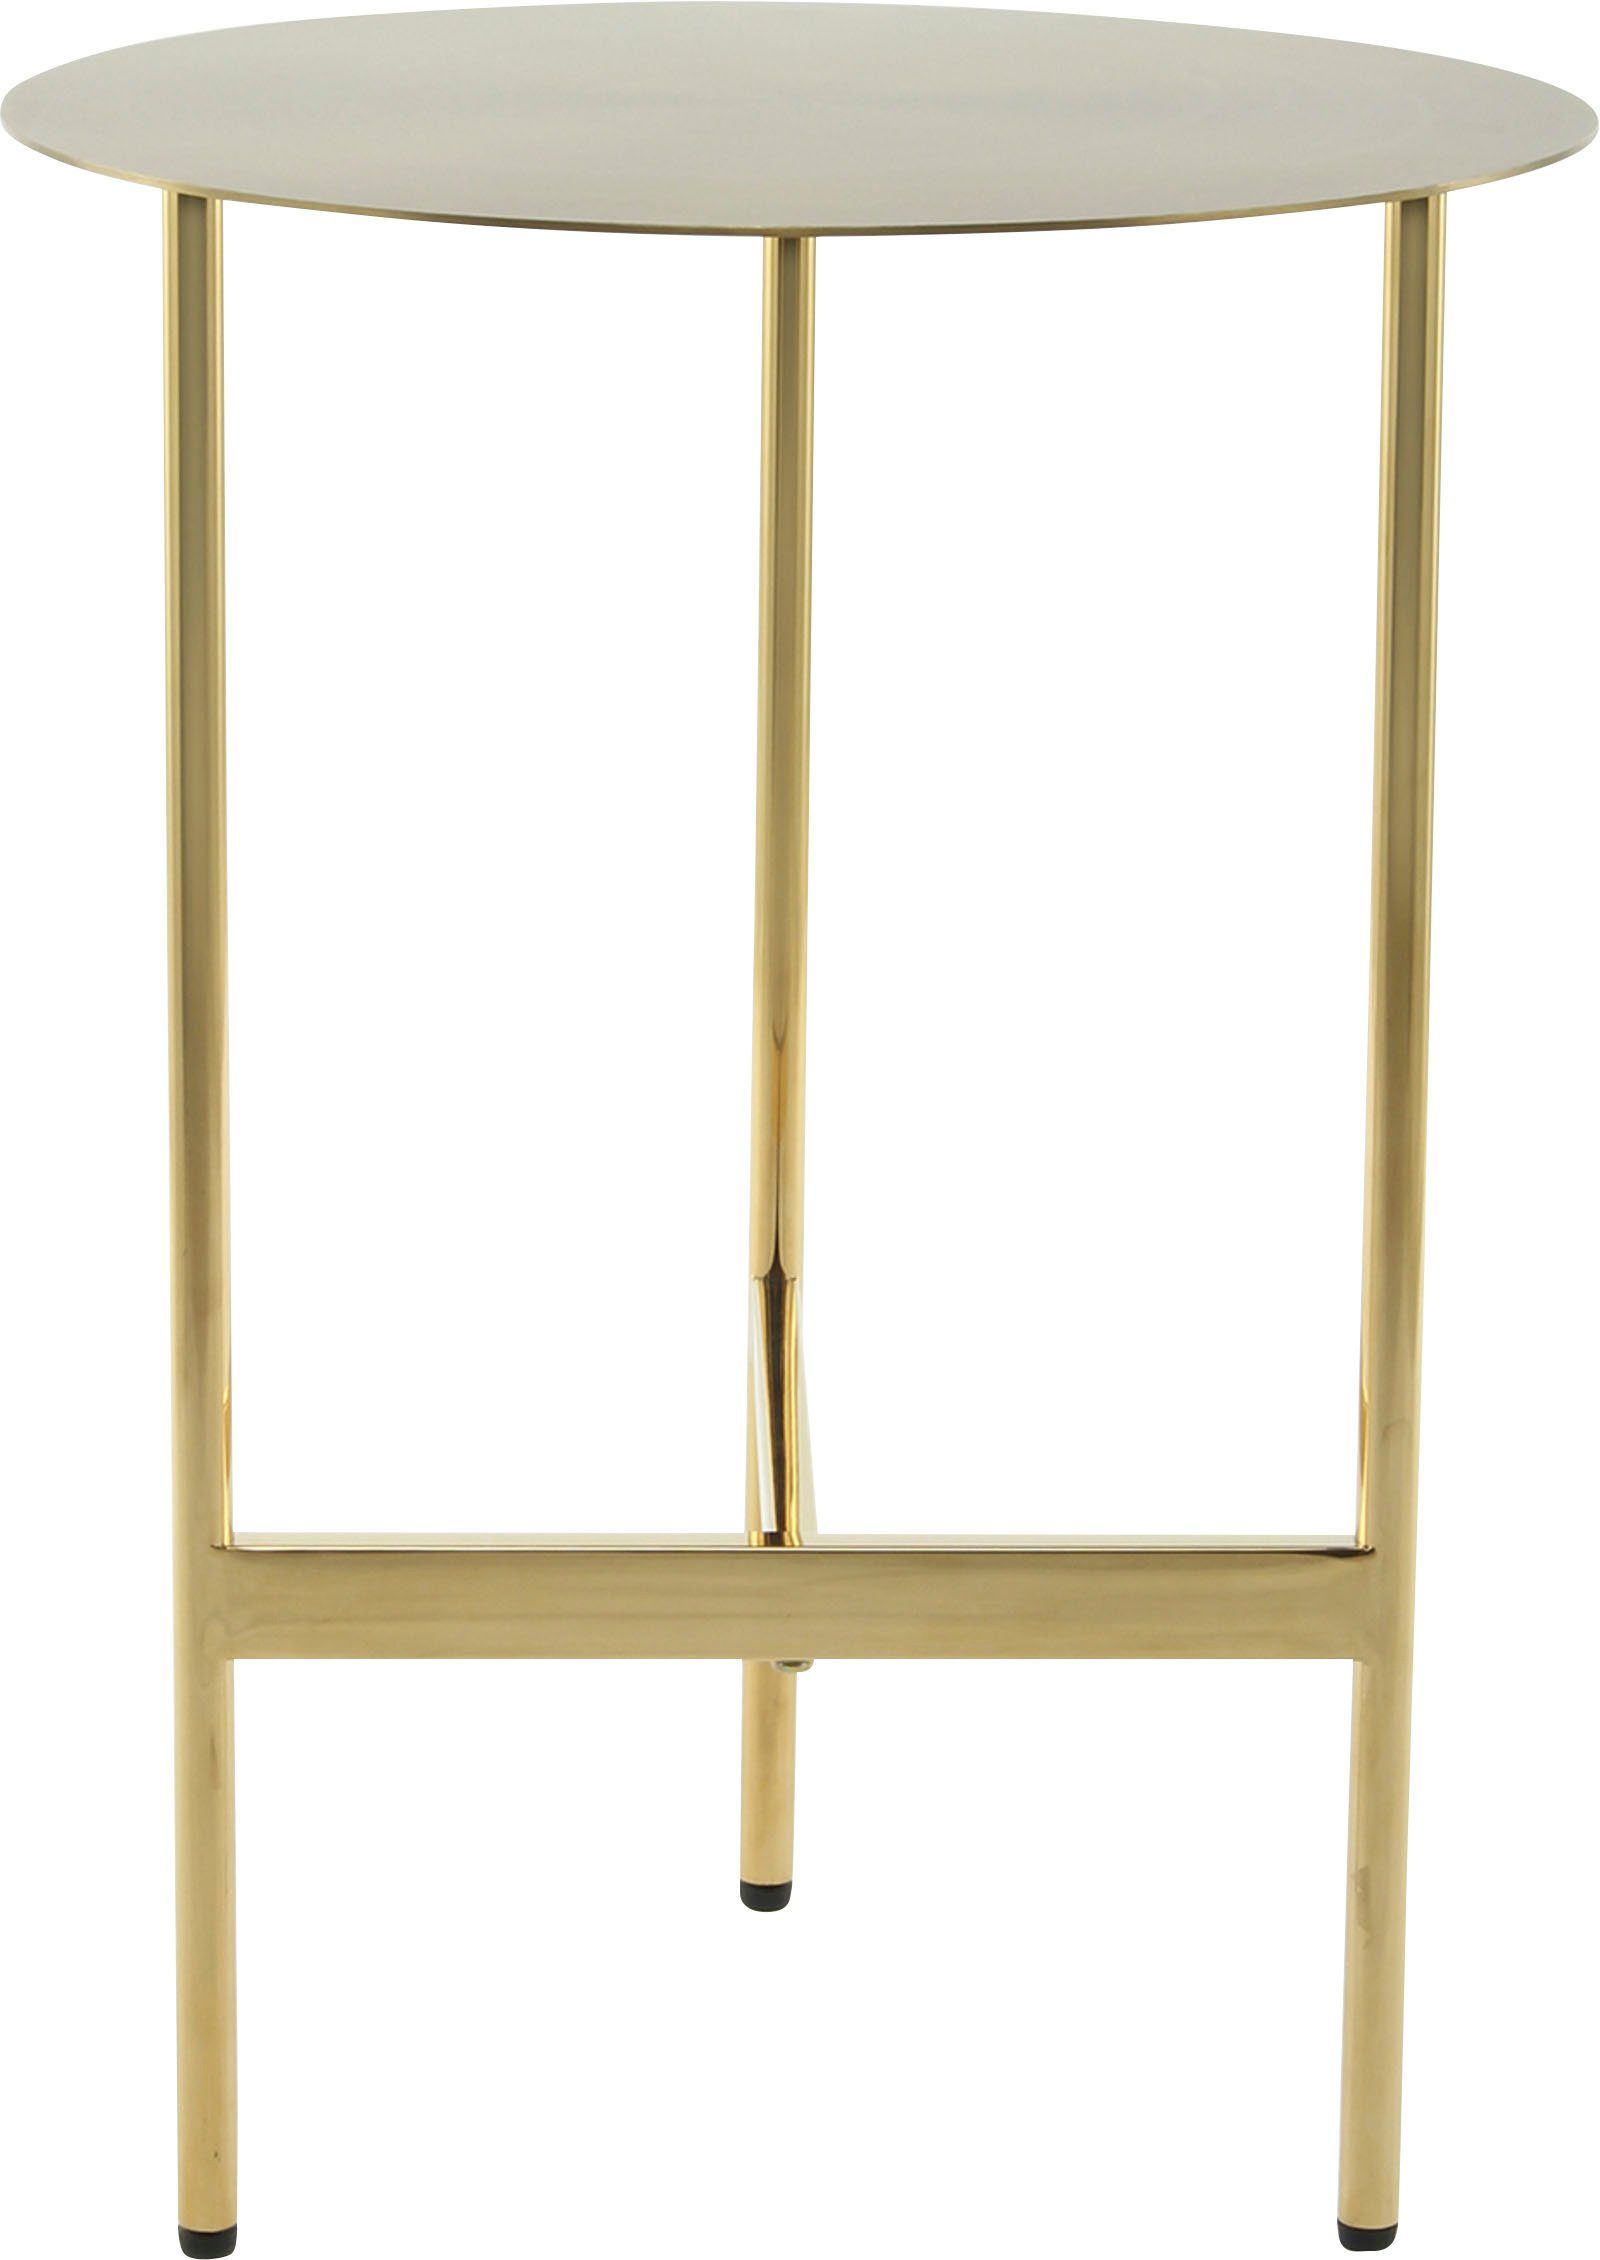 Kayoom Beistelltisch Pema, minimalistisches Gestelldesign Gold Edelstahl, Ablagefläche aus runde